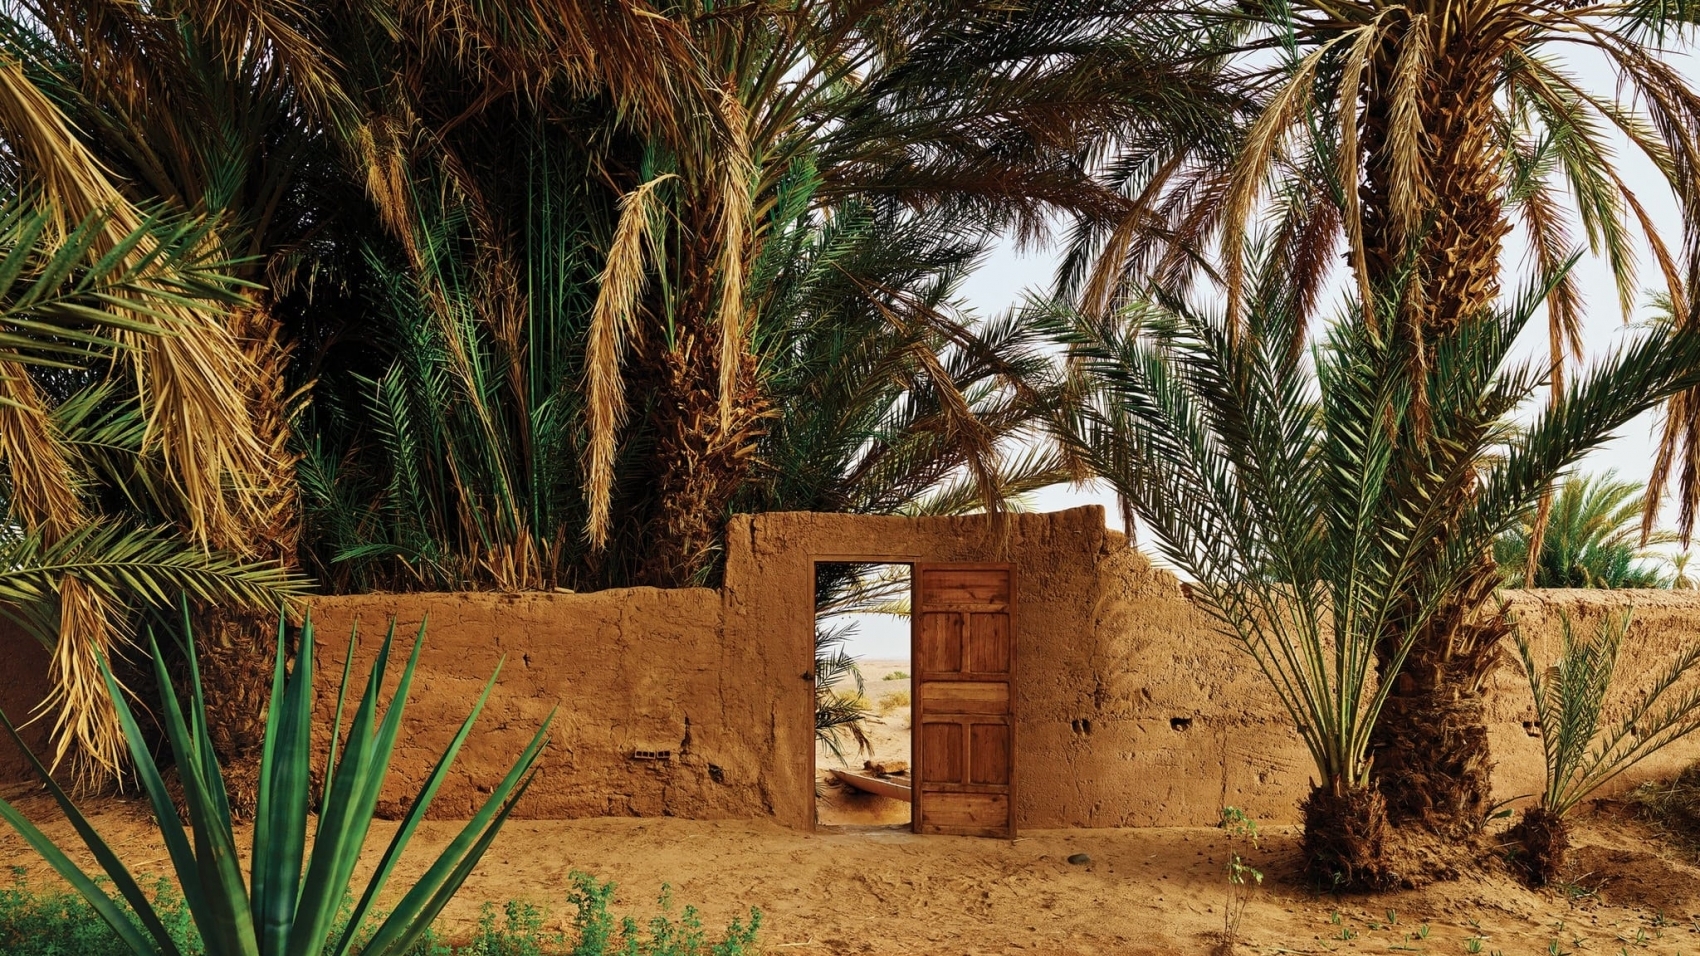 Le jardin clos de l'hôtel Dar Paru à M'Hamid, avec une porte qui s'ouvre sur le Sahara.
